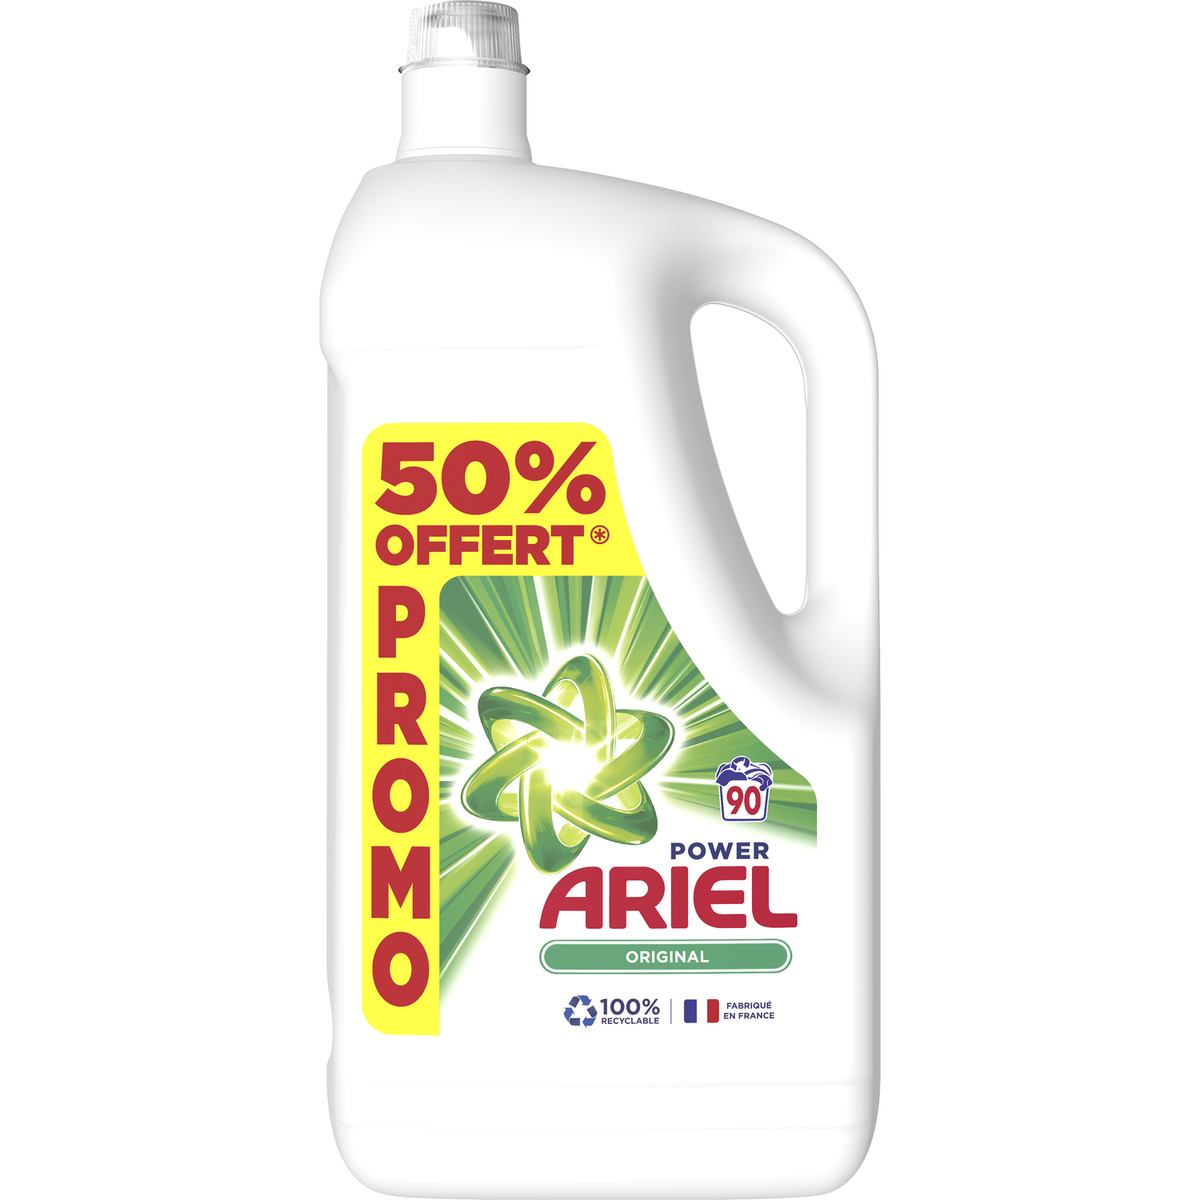 ARIEL Lessive liquide original 90 lavages 4,95l dont 50% offert pas cher 